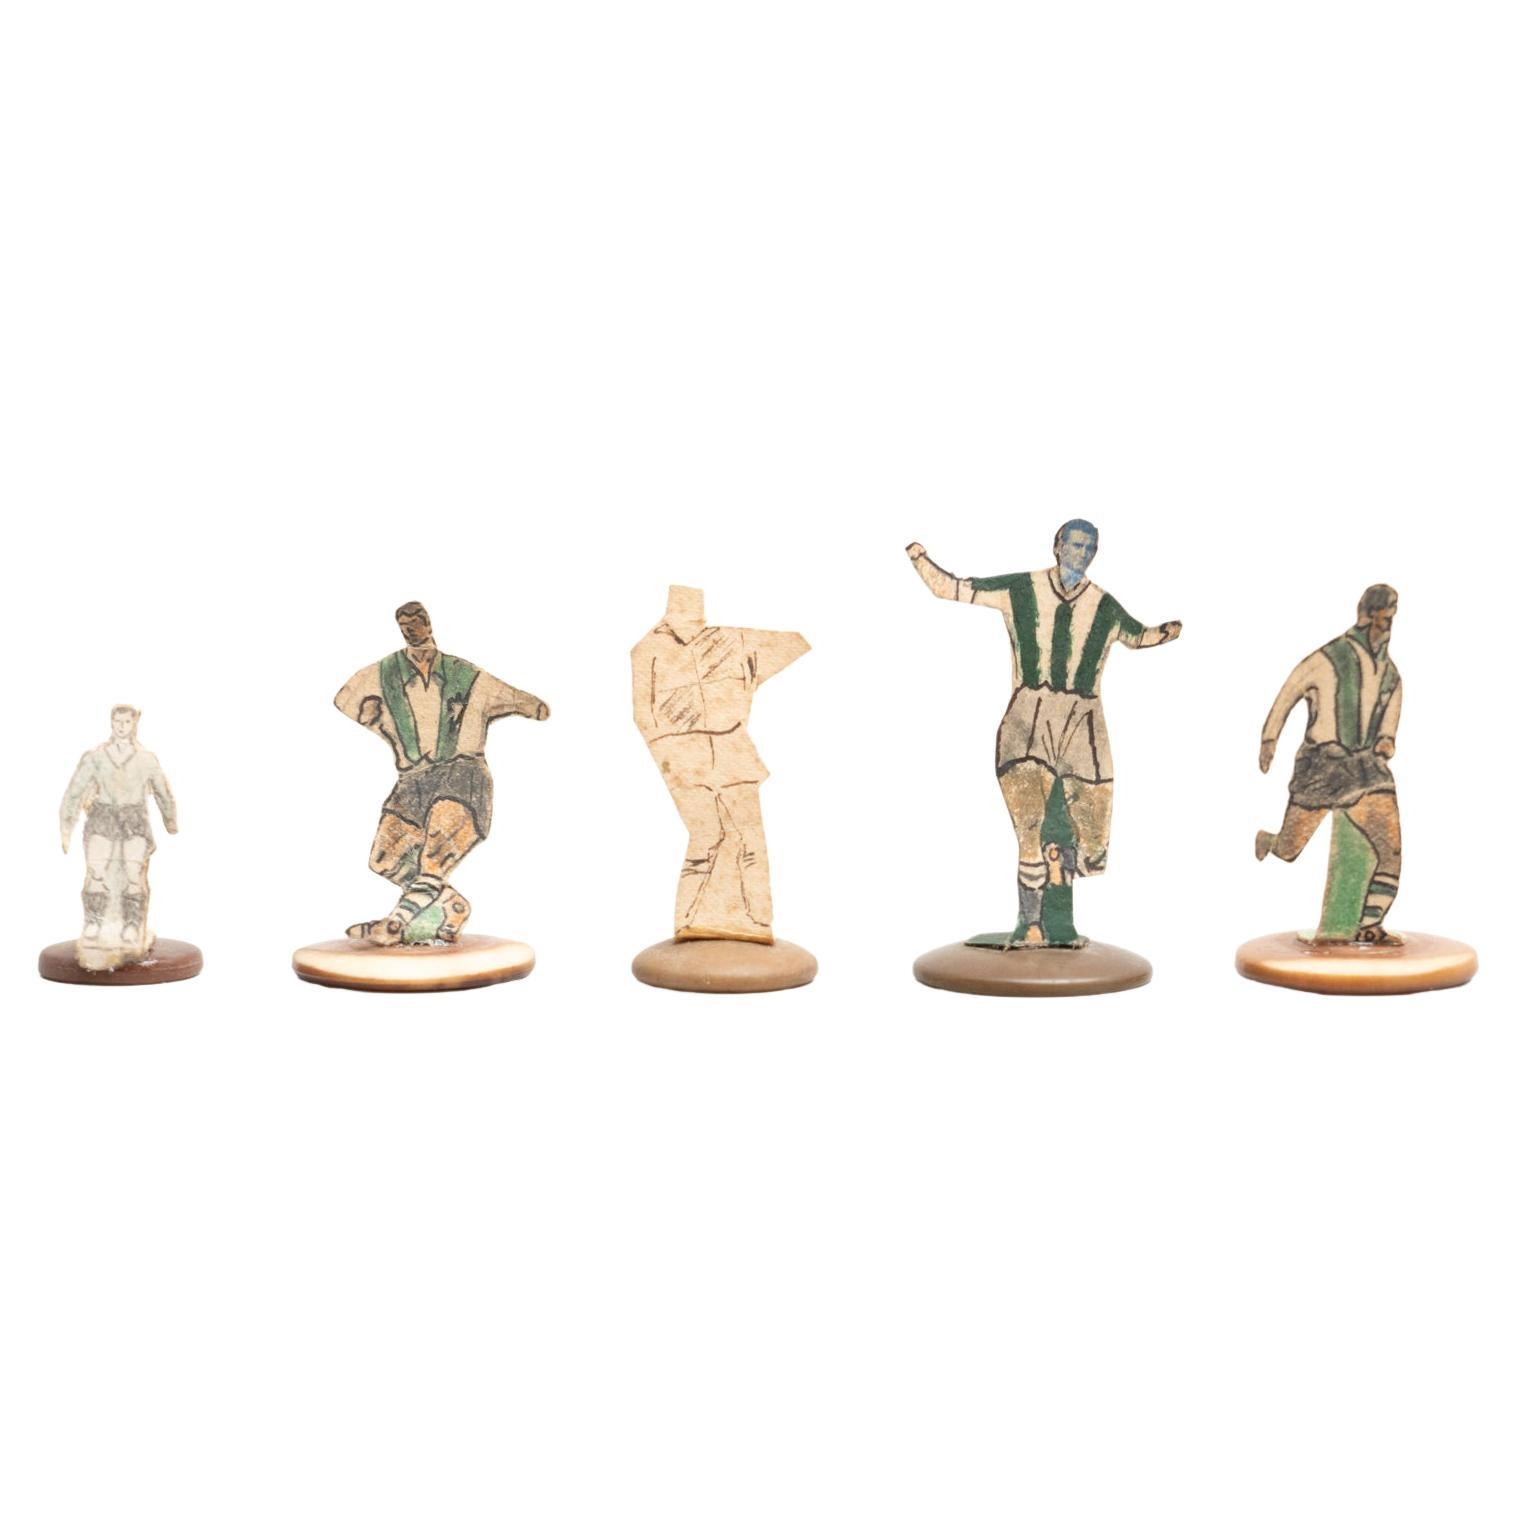 Ensemble de 5 figurines de football traditionnelles anciennes à boutons, datant d'environ 1950